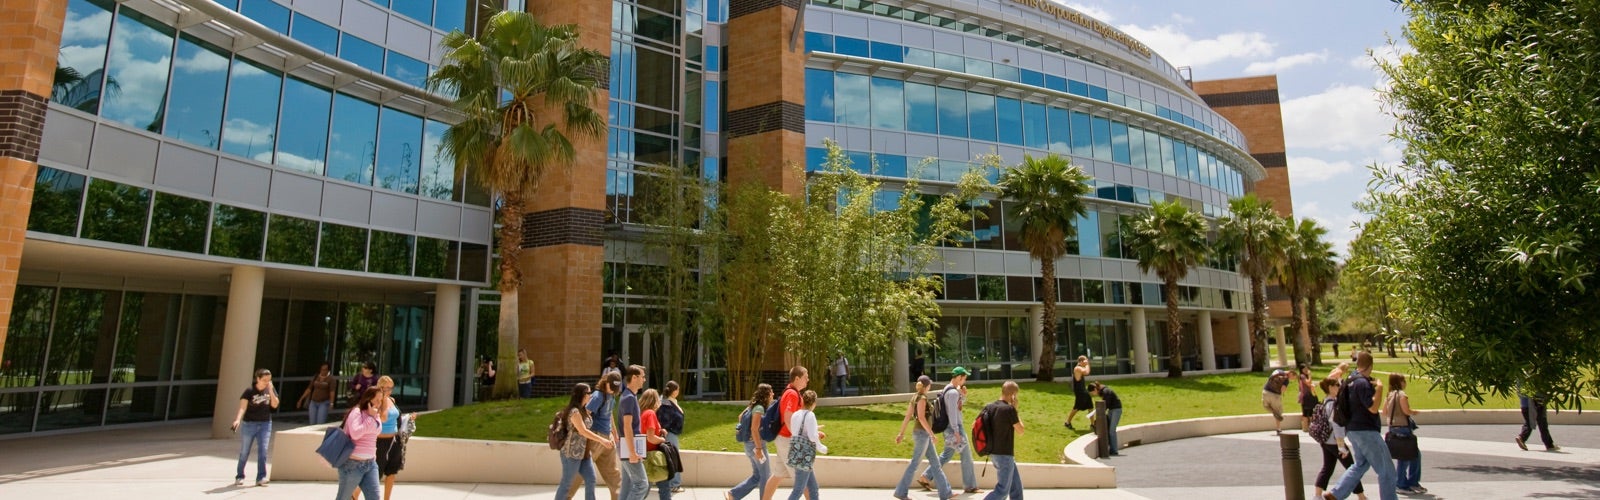 ucf college campus tours